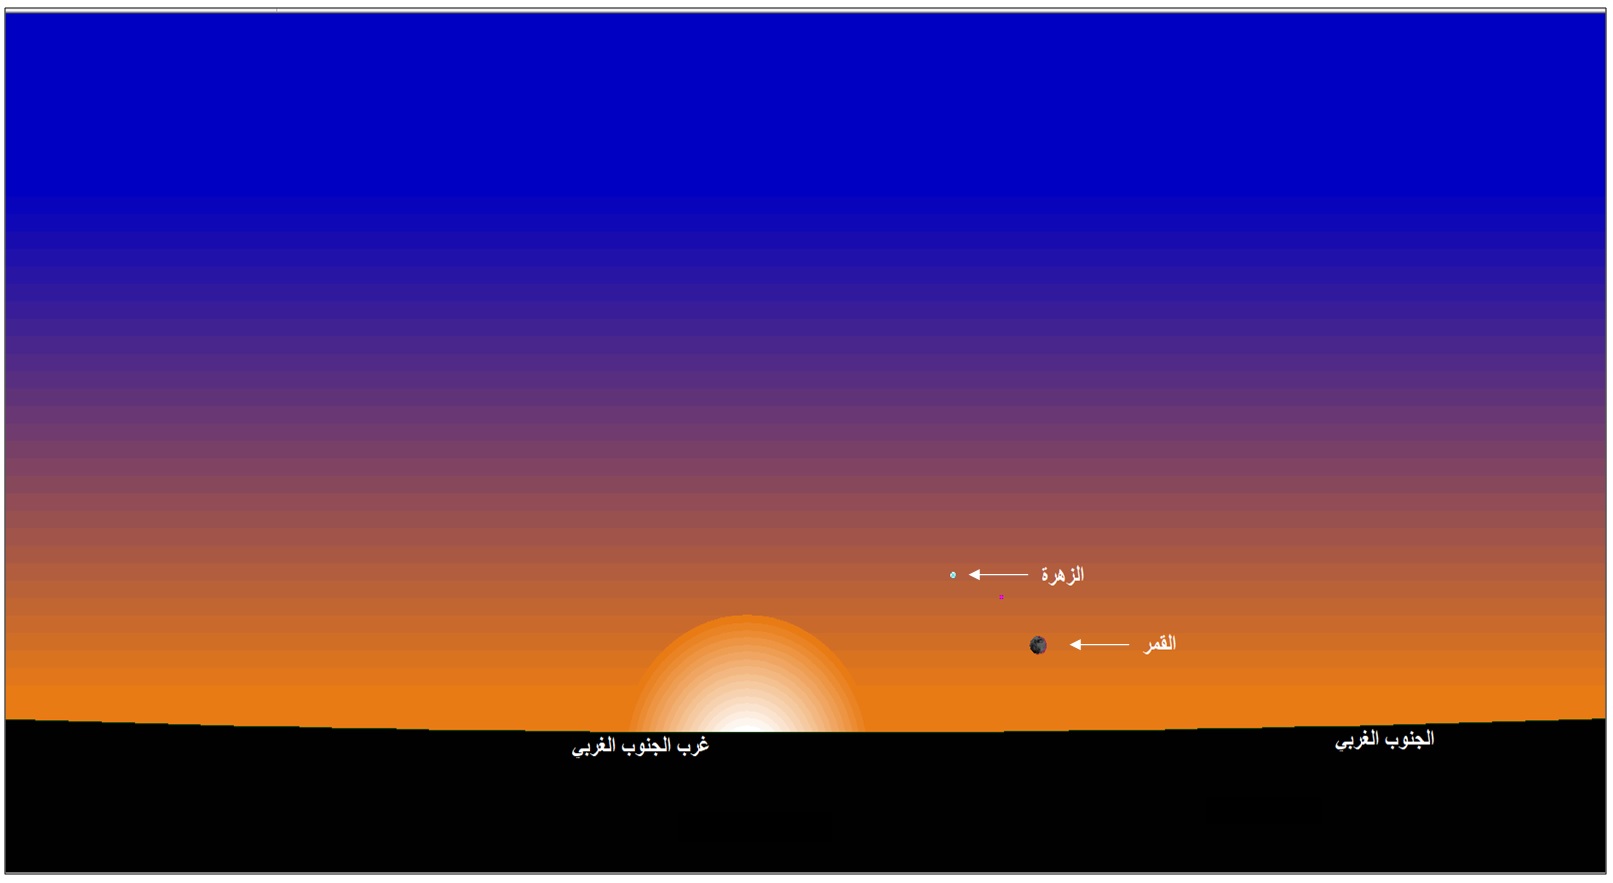 صورة 1 : وضع القمر عند الأفق الغربي بمدينة تونس،  عند غروب الشمس يوم الخميس 24  نوفمبر 2022.